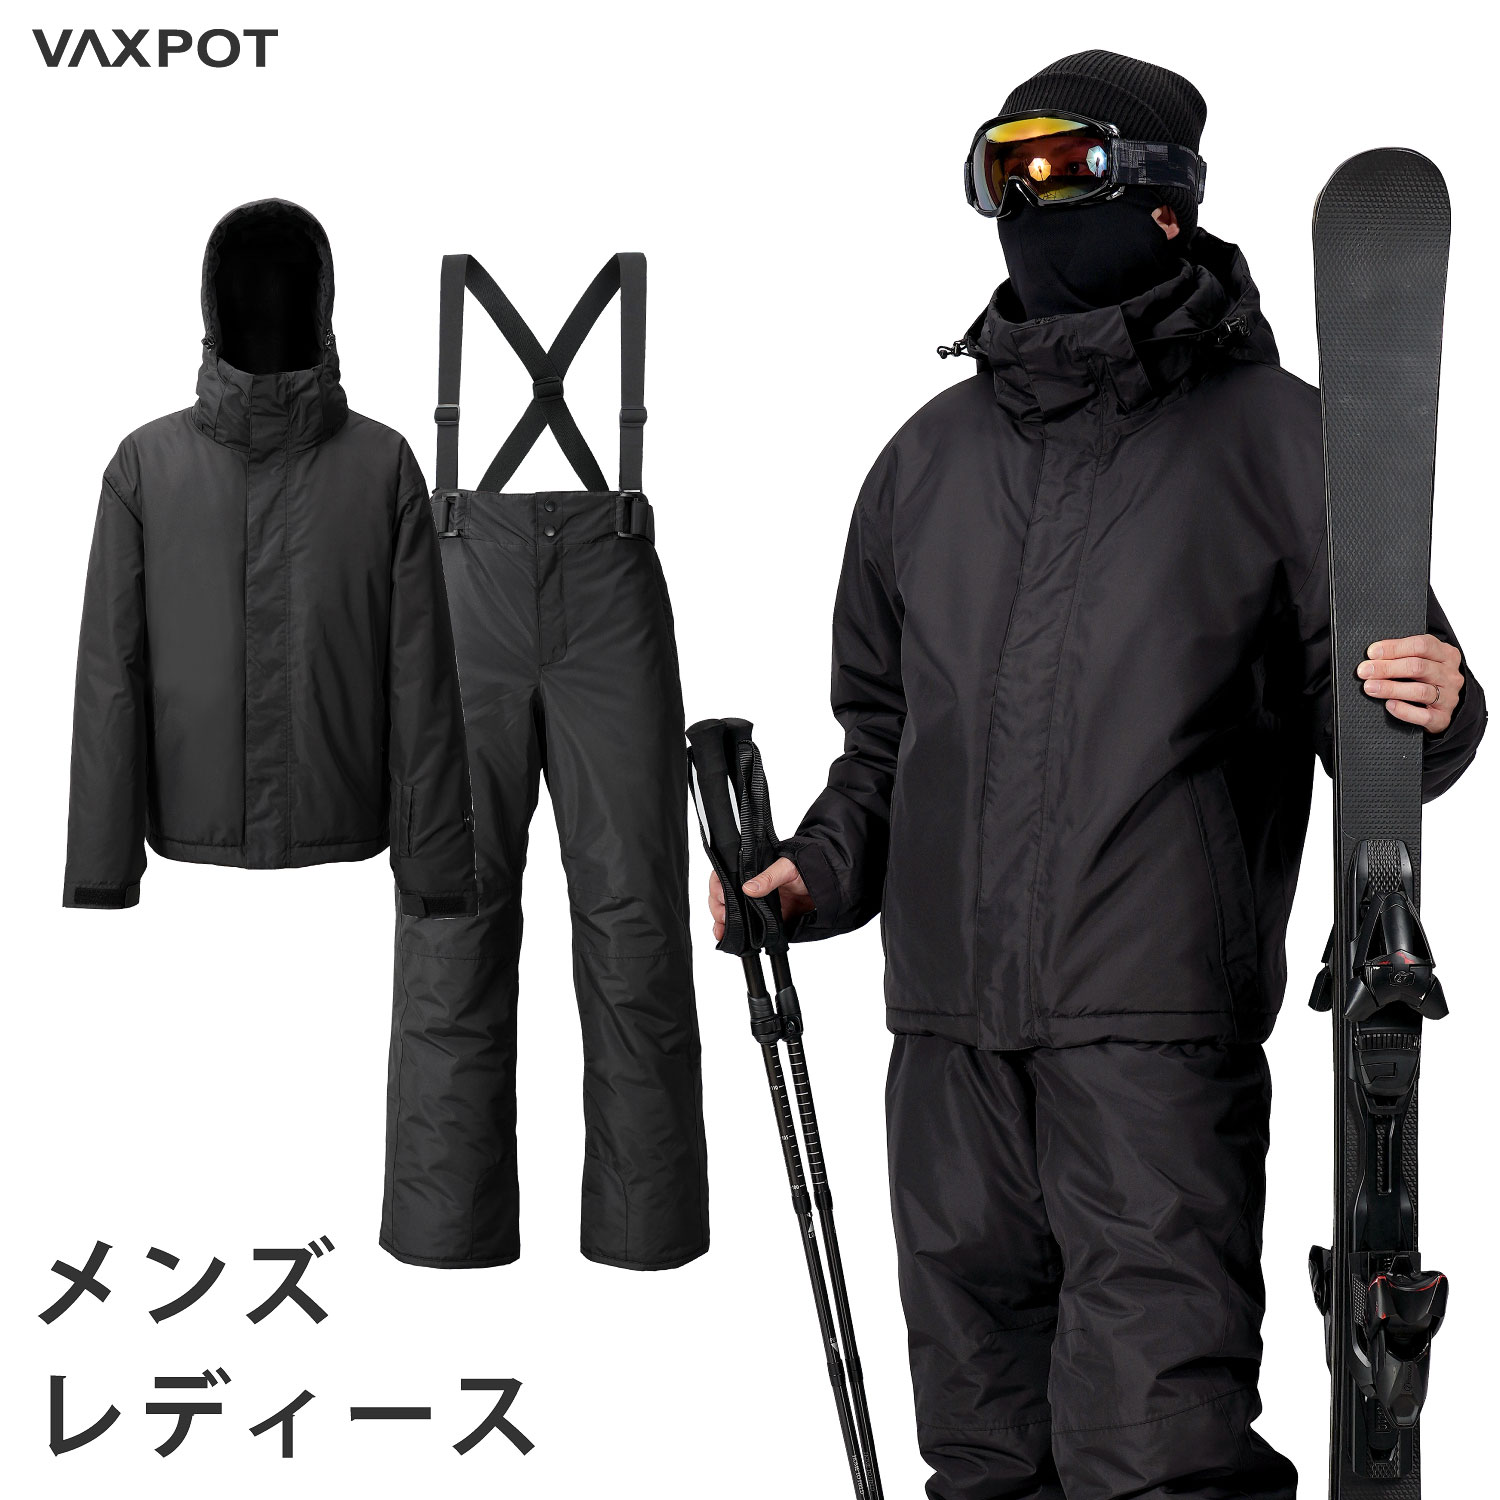 【送料無料】スキーウェア レディース メンズ 上下セット VAXPOT(バックスポット) スキー ウ ...